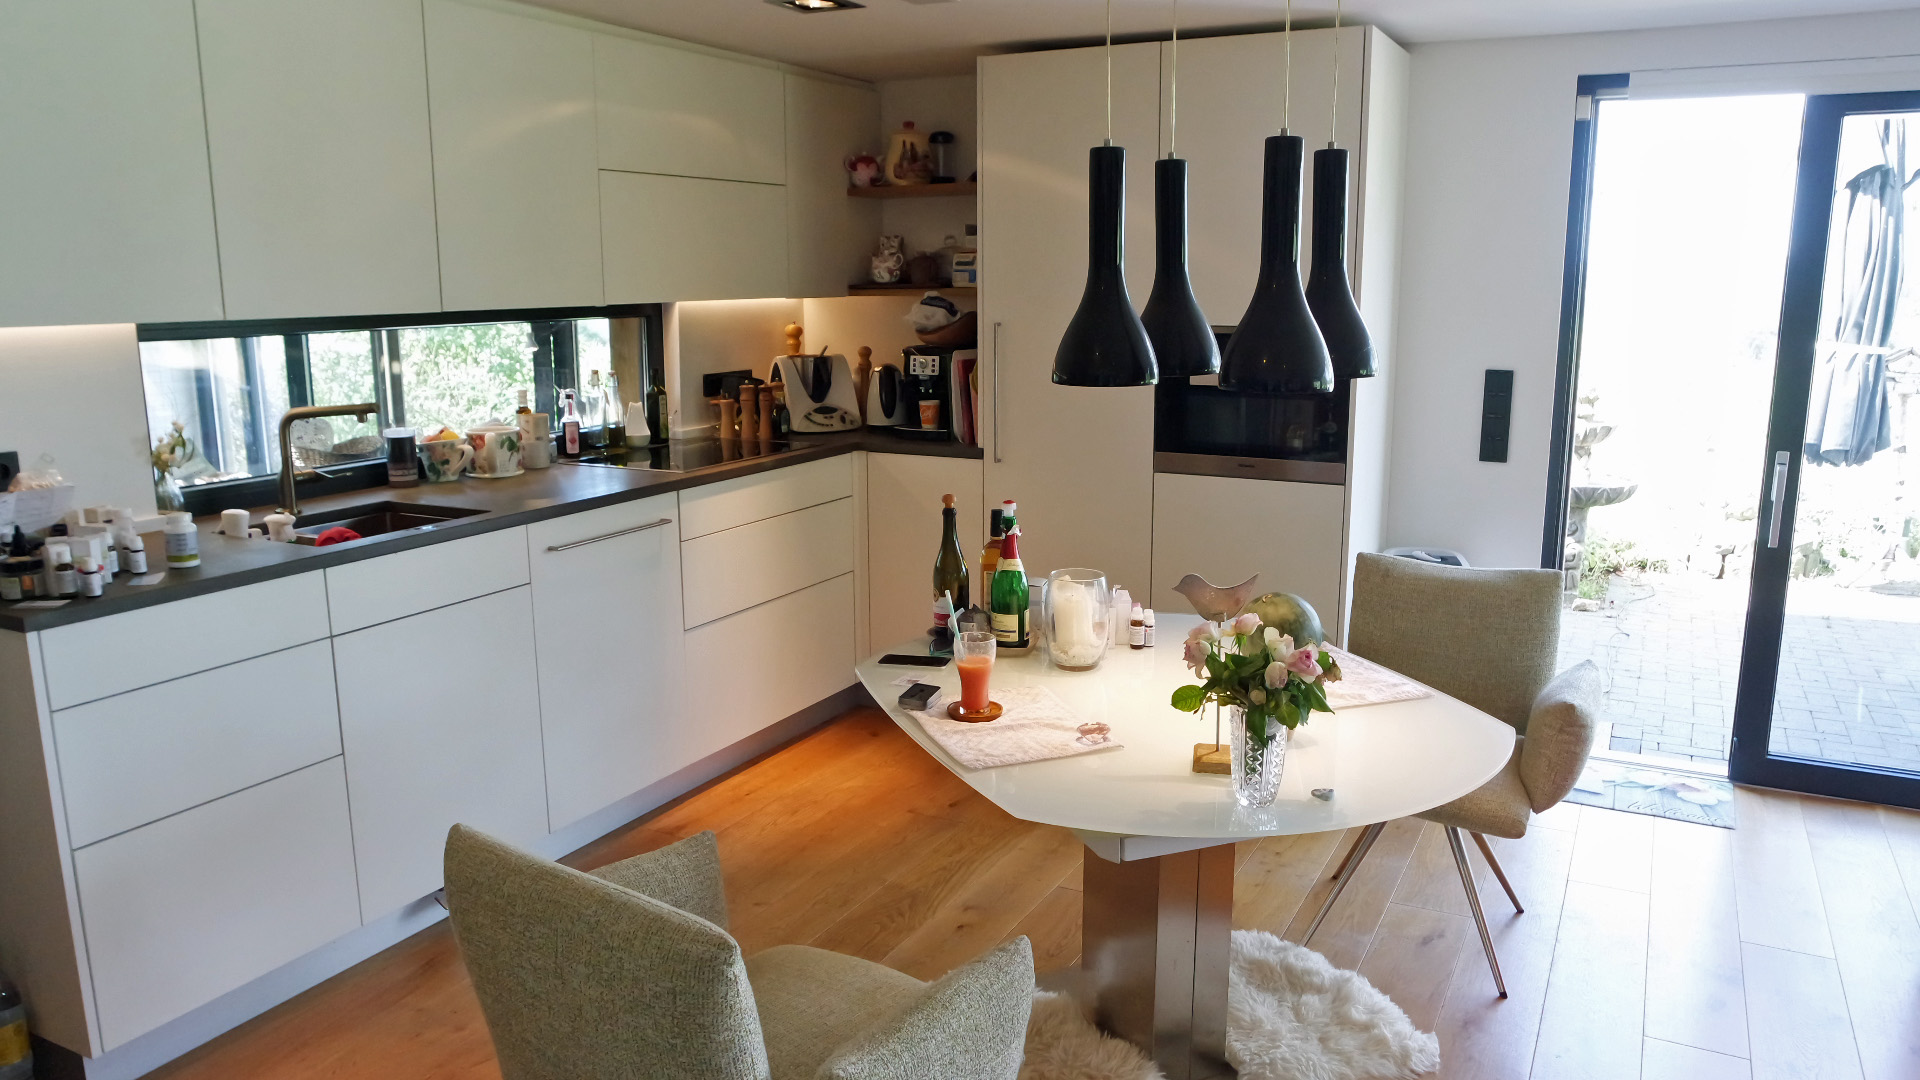 Morsbach: Kleiner Luxus-Bungalow in einzigartig schöner, ruhiger Naturlage, moderne Küche (Miele) im Kaufpreis enthalten